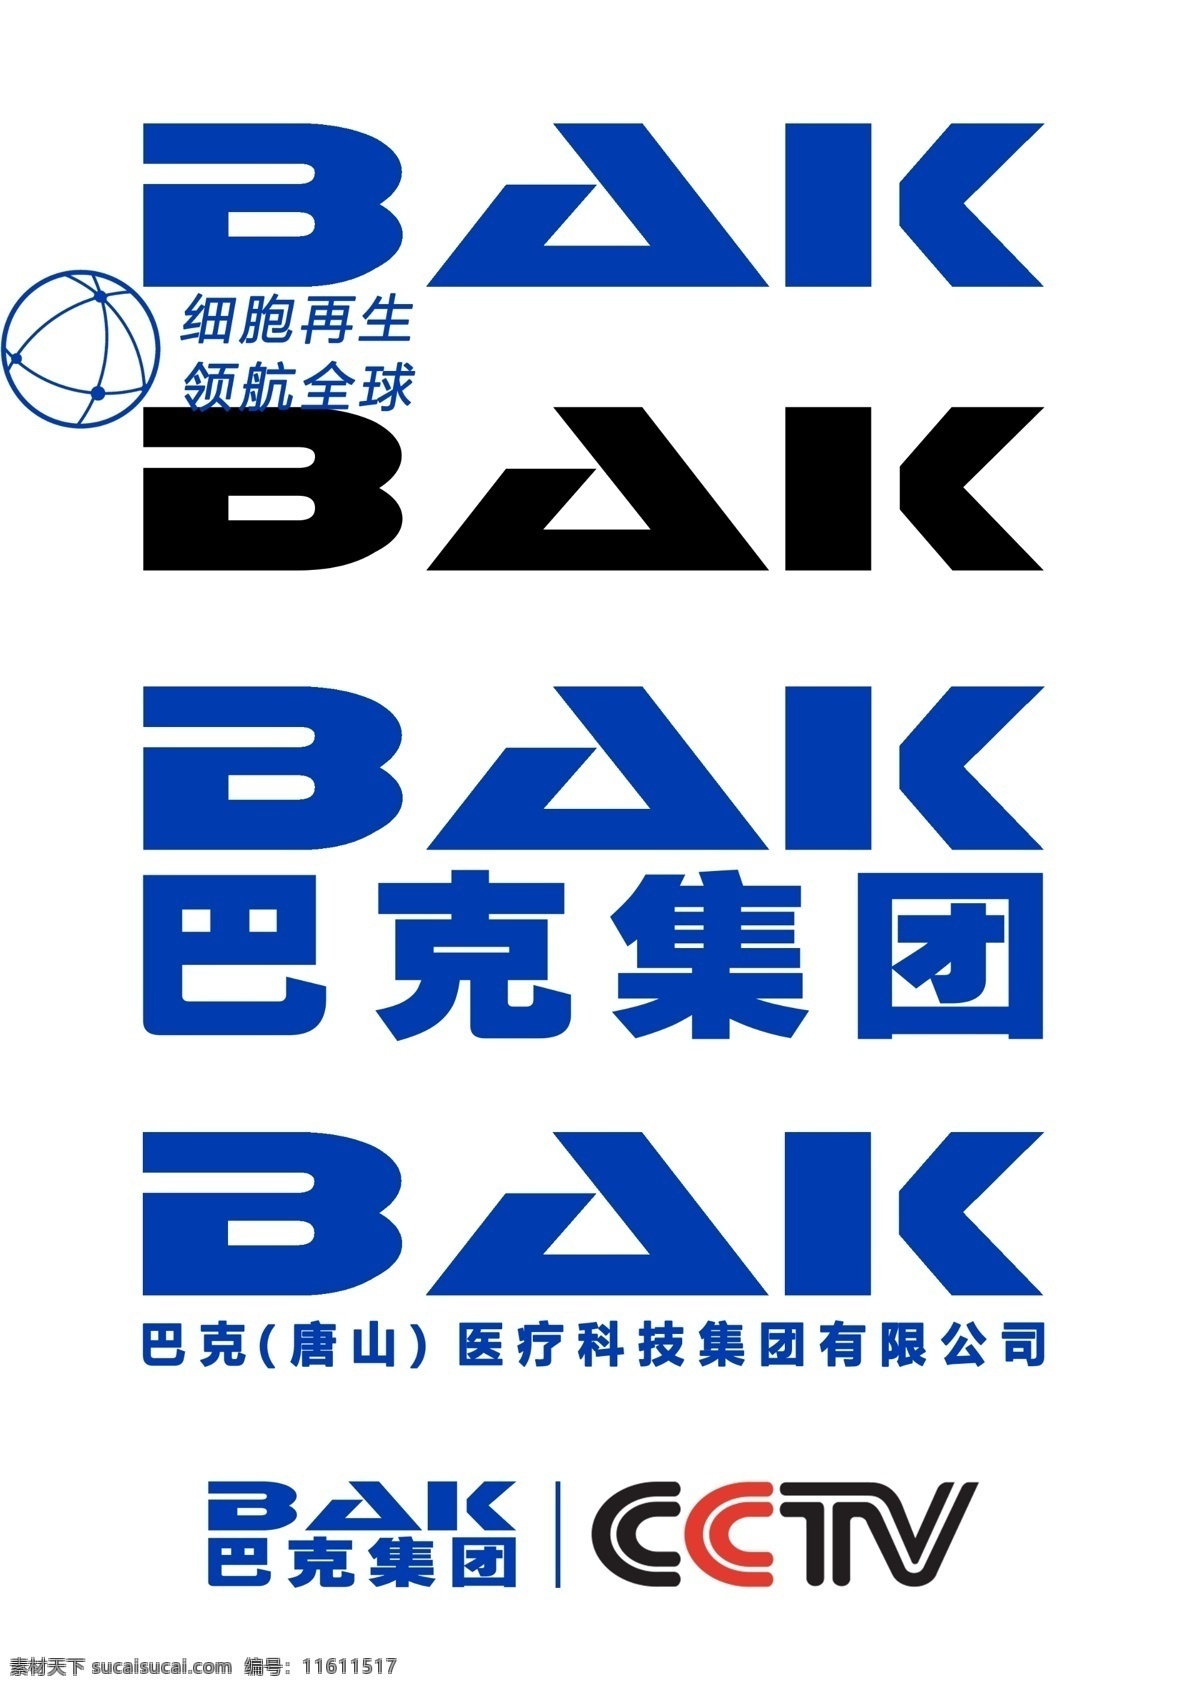 巴纳克 logo 巴克 巴克logo 分层